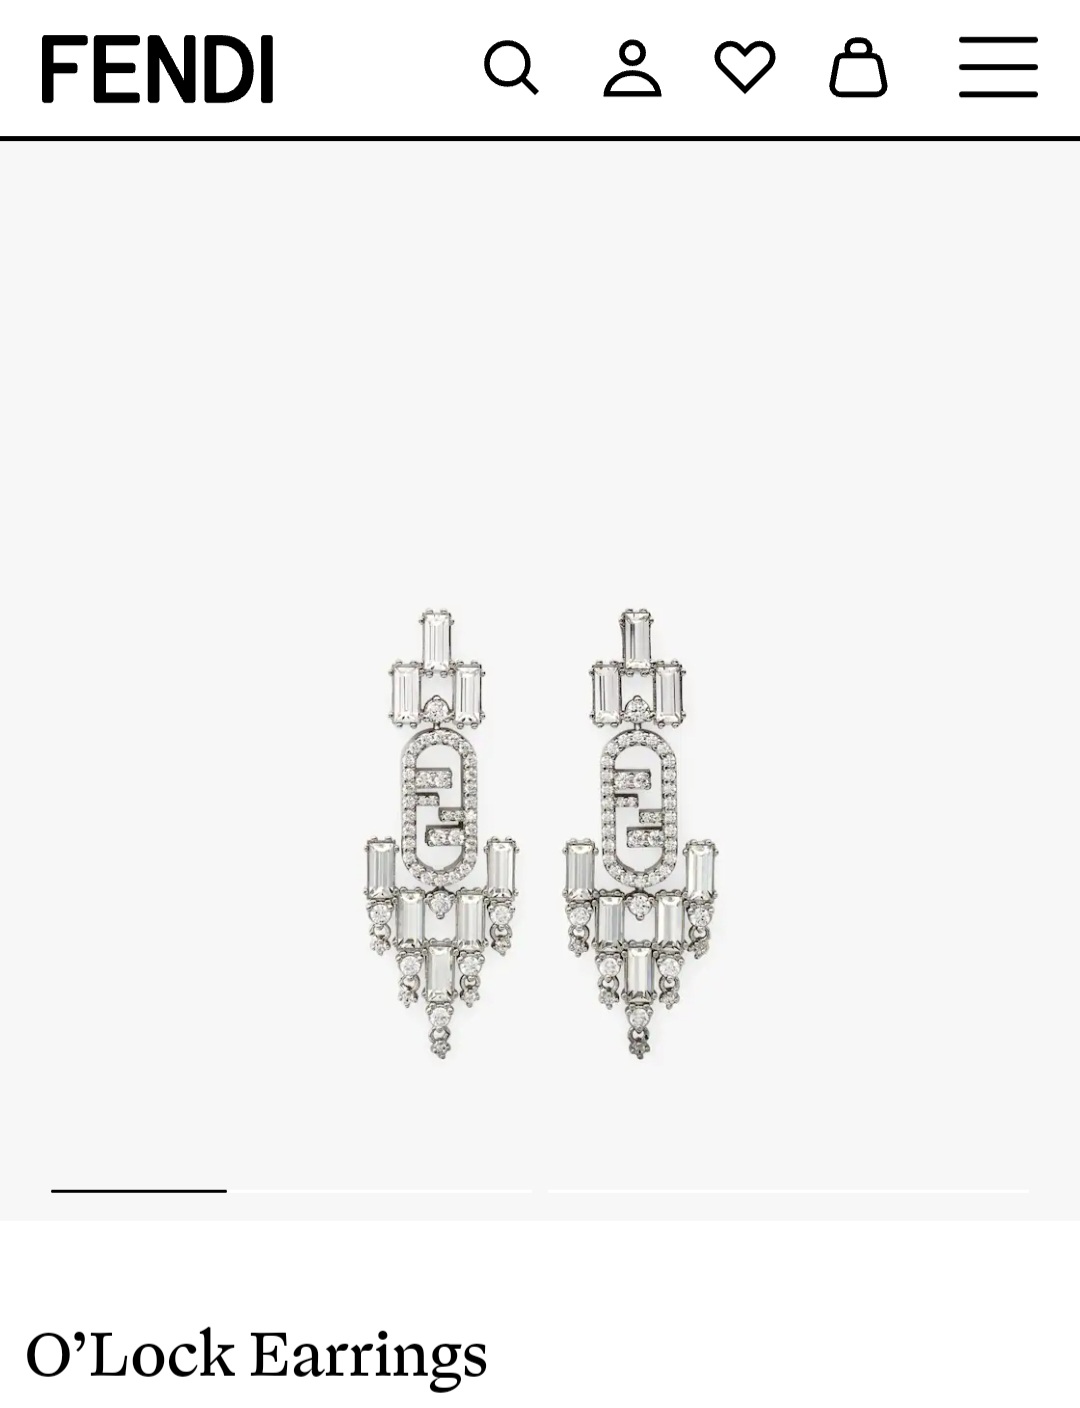 Fendi O’Lock earrings